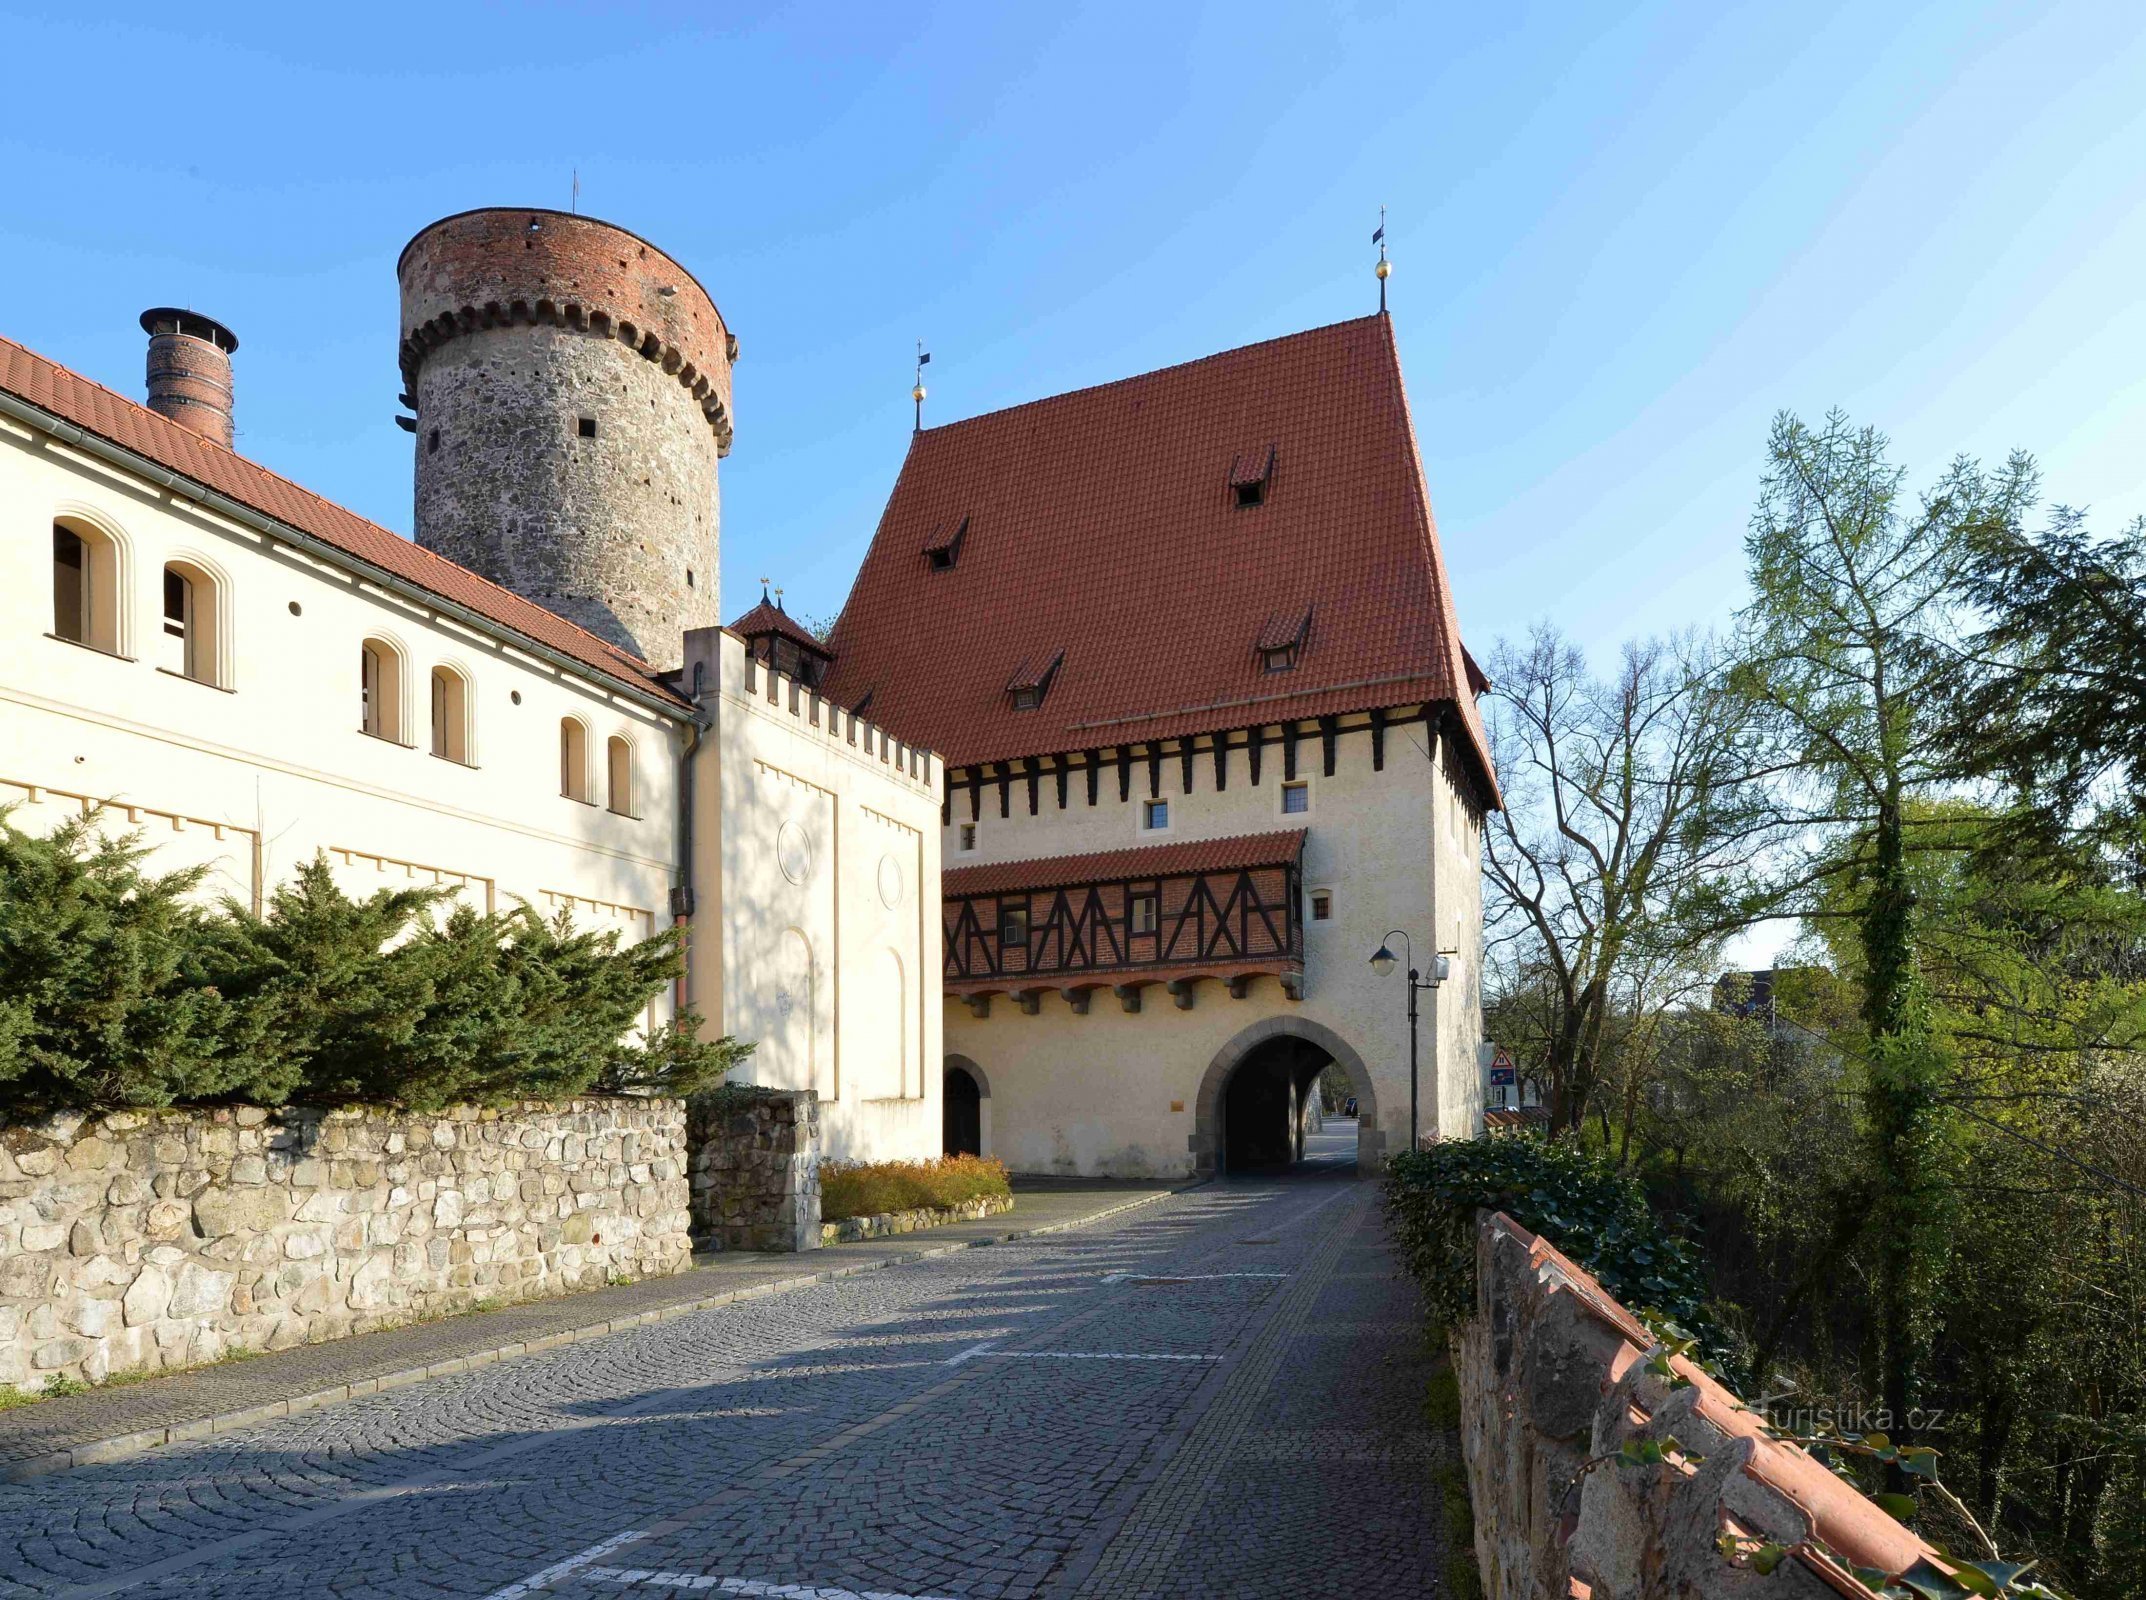 Kotnov-tornet och Bechyňská-porten - ett av de äldsta monumenten i Tábor